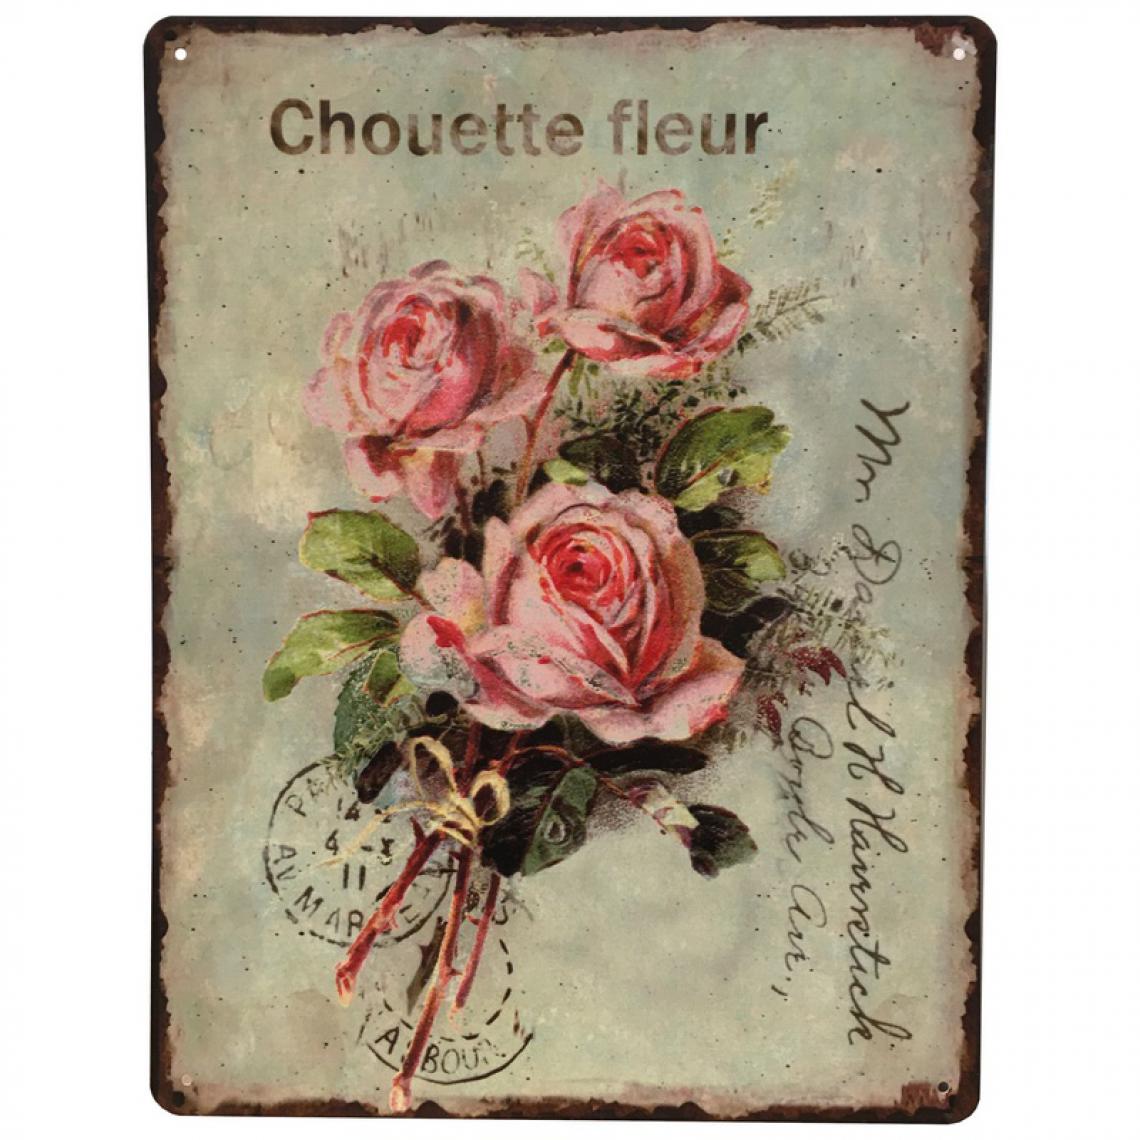 L'Originale Deco - Plaque Pub Plaque Retro Plaque Vintage Tableau Métal Fer Chouette Fleur 33 cm x 25 cm x 0.1 cm - Objets déco